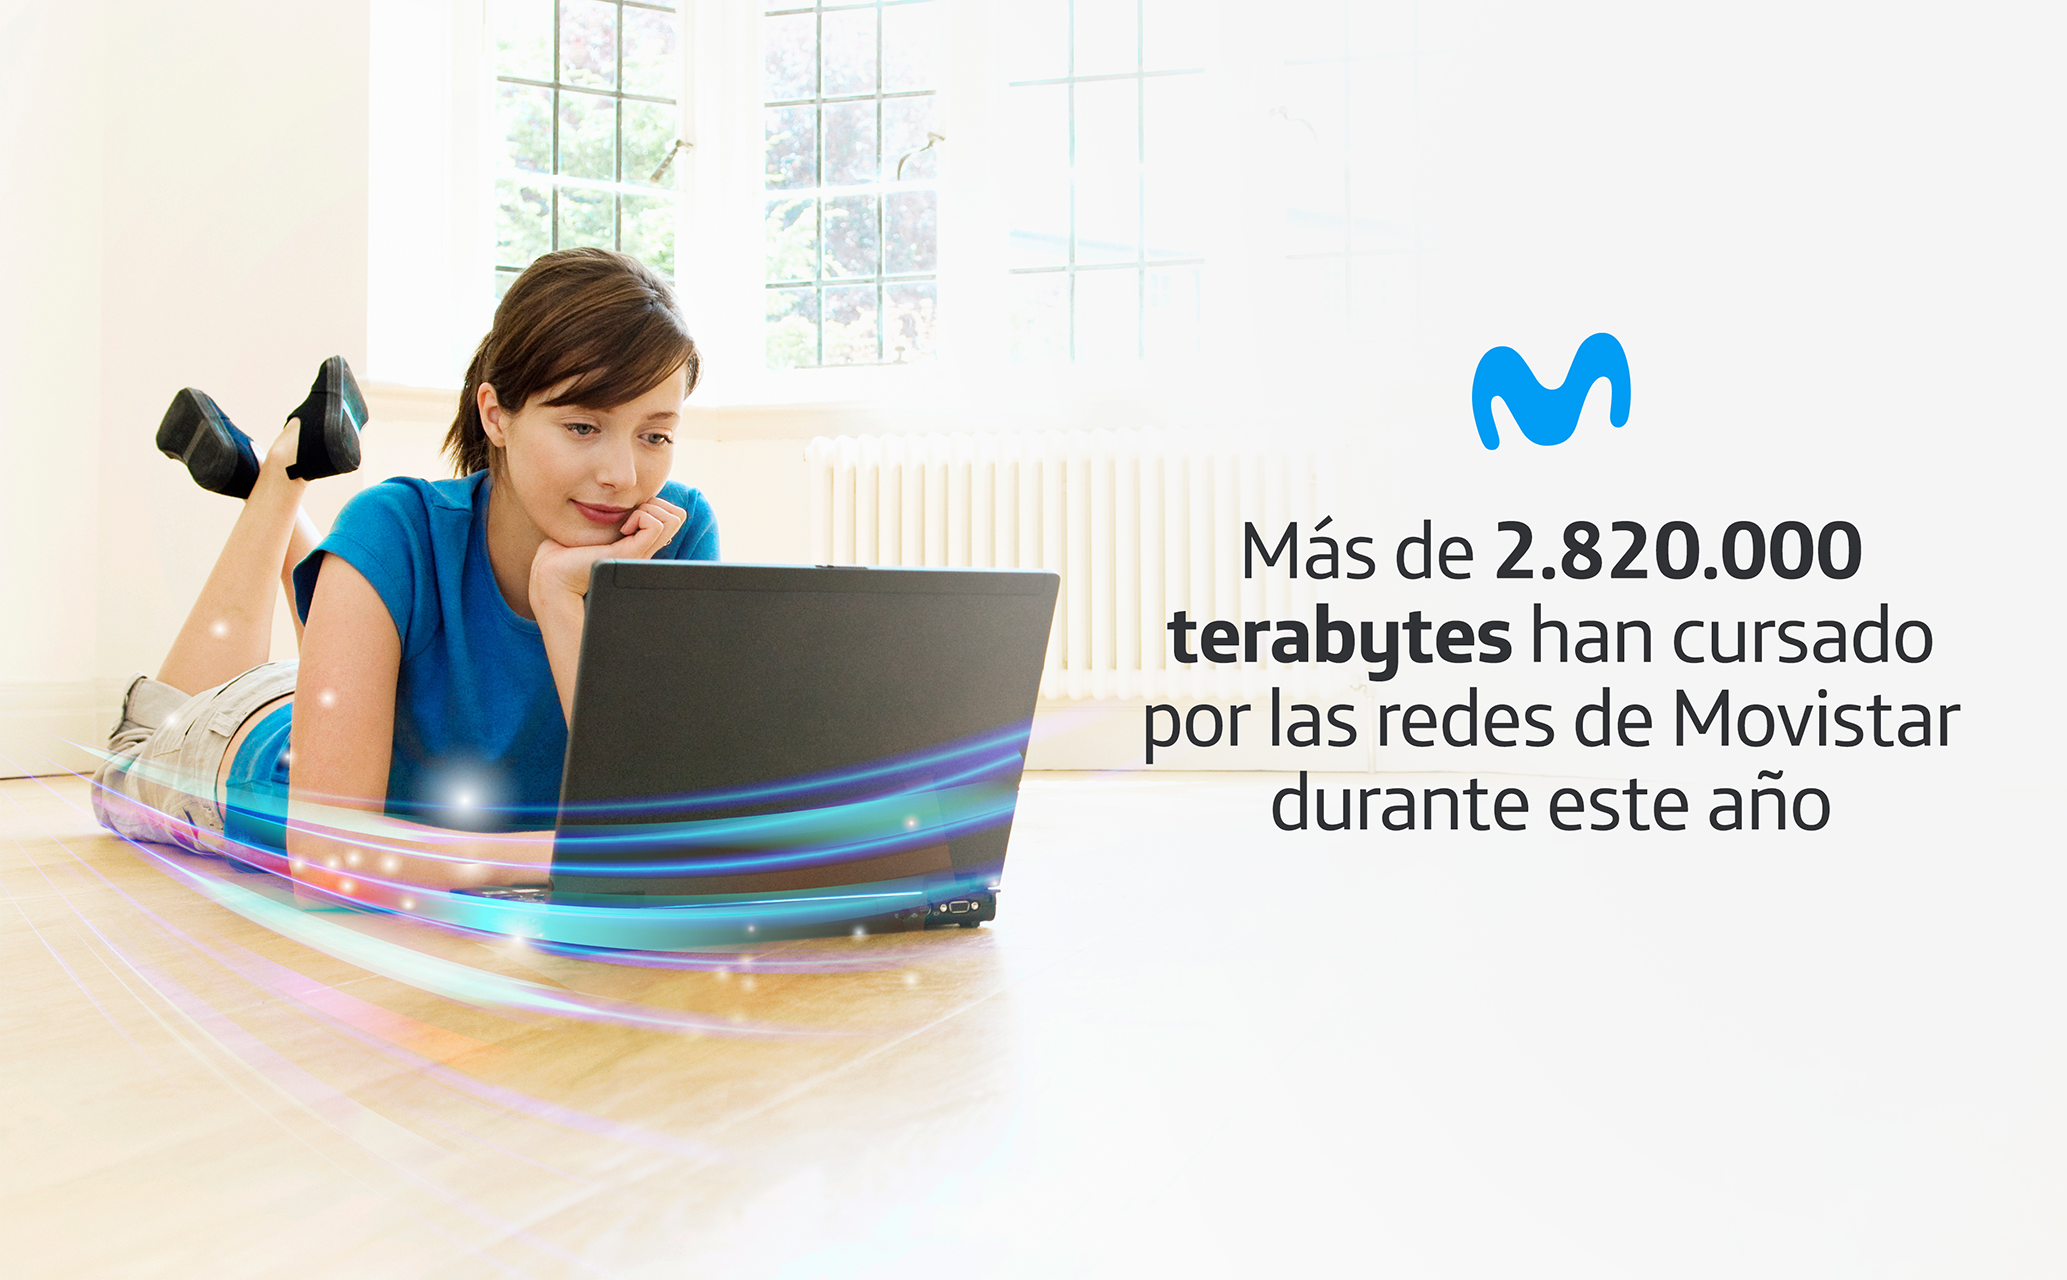 <strong> Más de 2.820.000 terabytes han cursado por las redes de Movistar durante este año<strong>